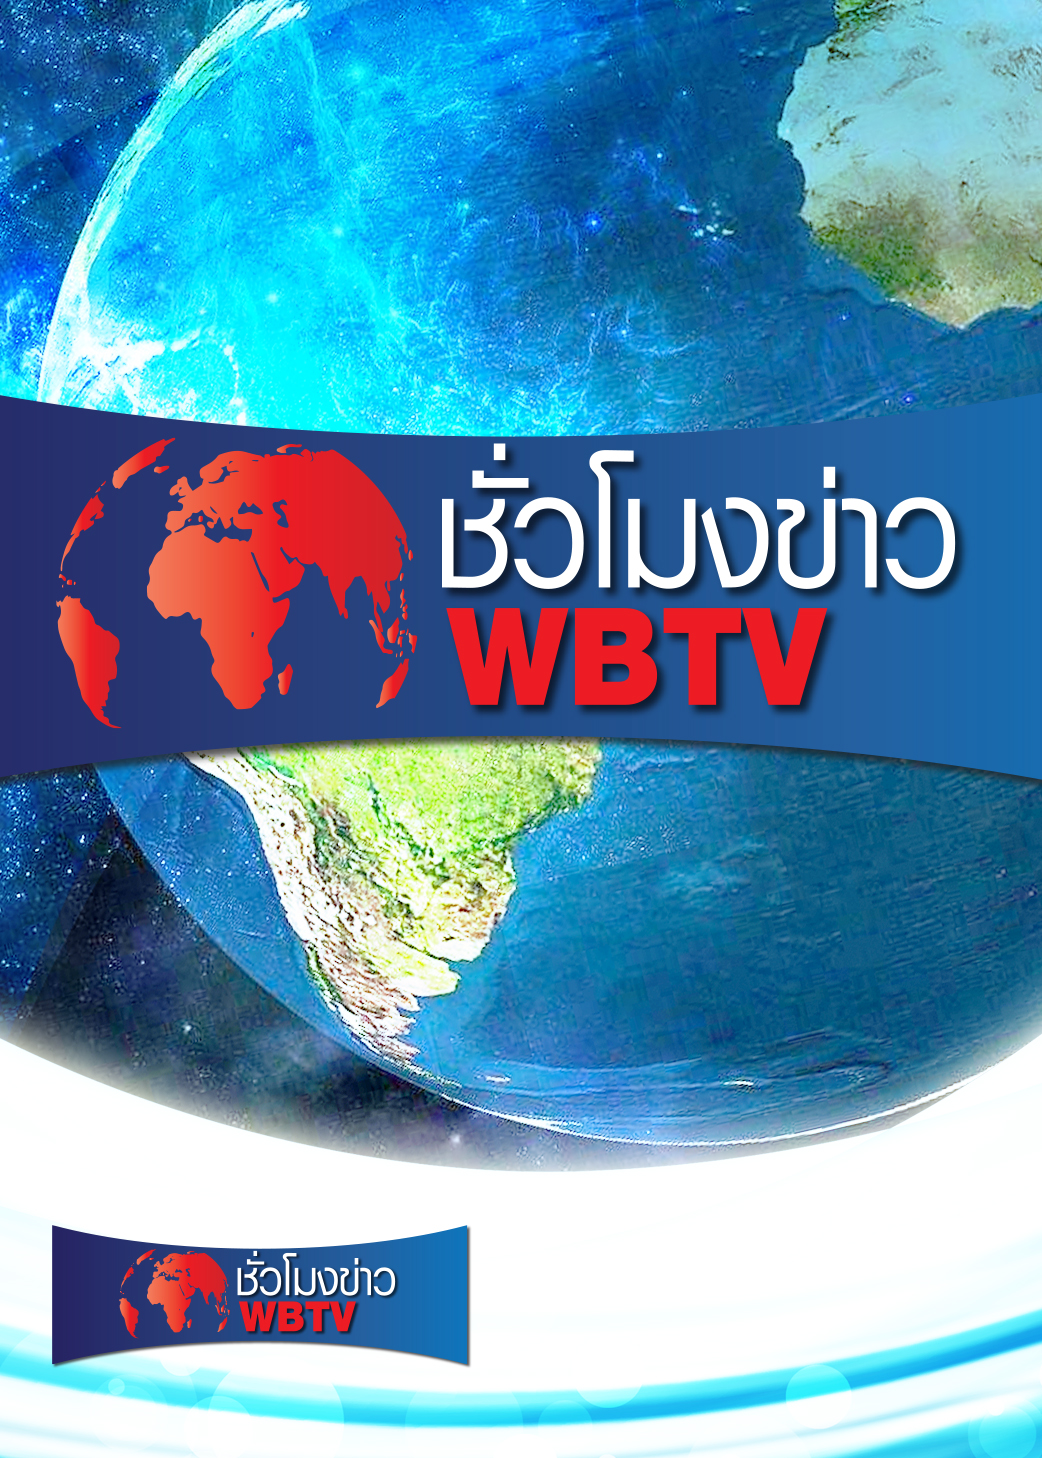 ชั่วโมงข่าว WBTV | ออกอากาศวันที่ 12 ก.ค. 64